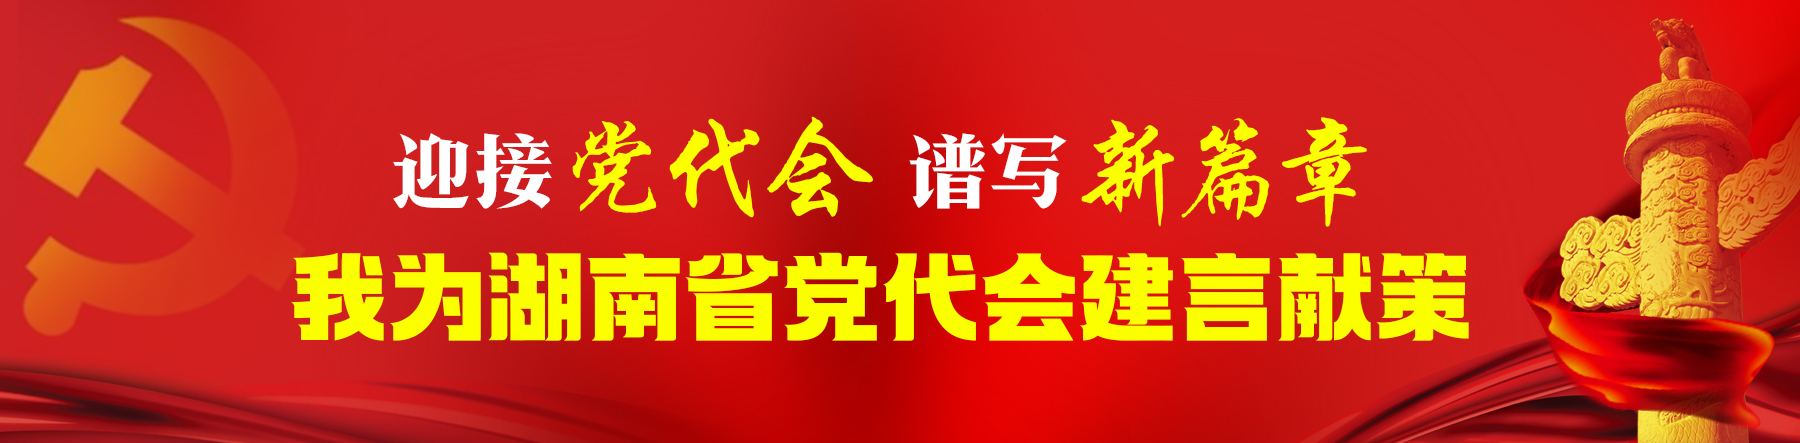 迎接党代会 谱写新篇章 我为湖南省党代会建言献策